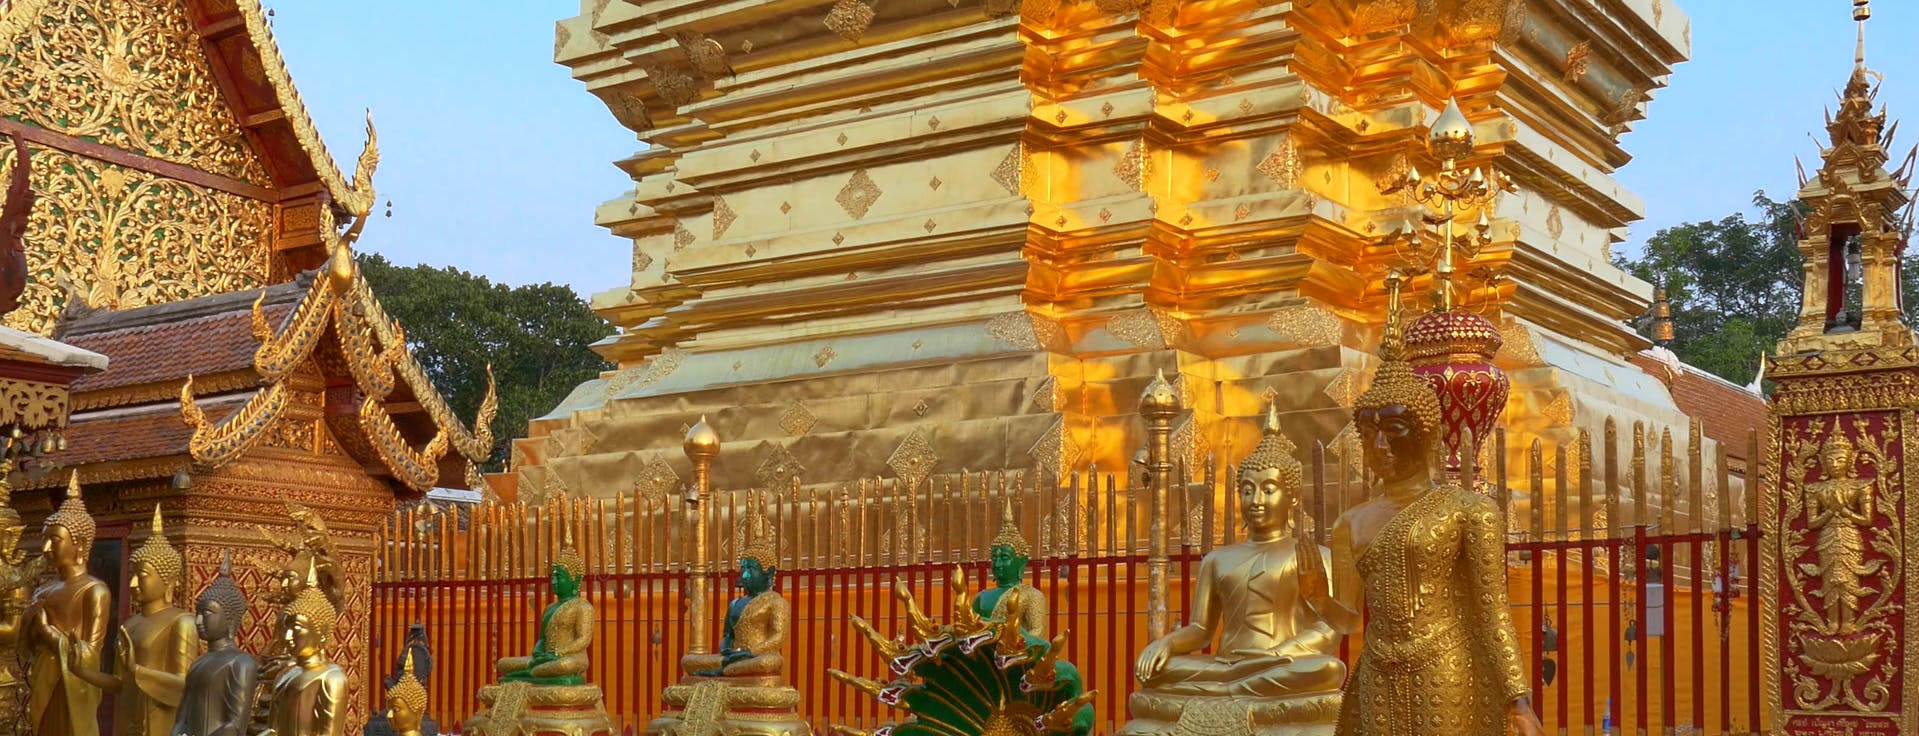 Tour durch die Stadt und die Tempel von Chiang Mai